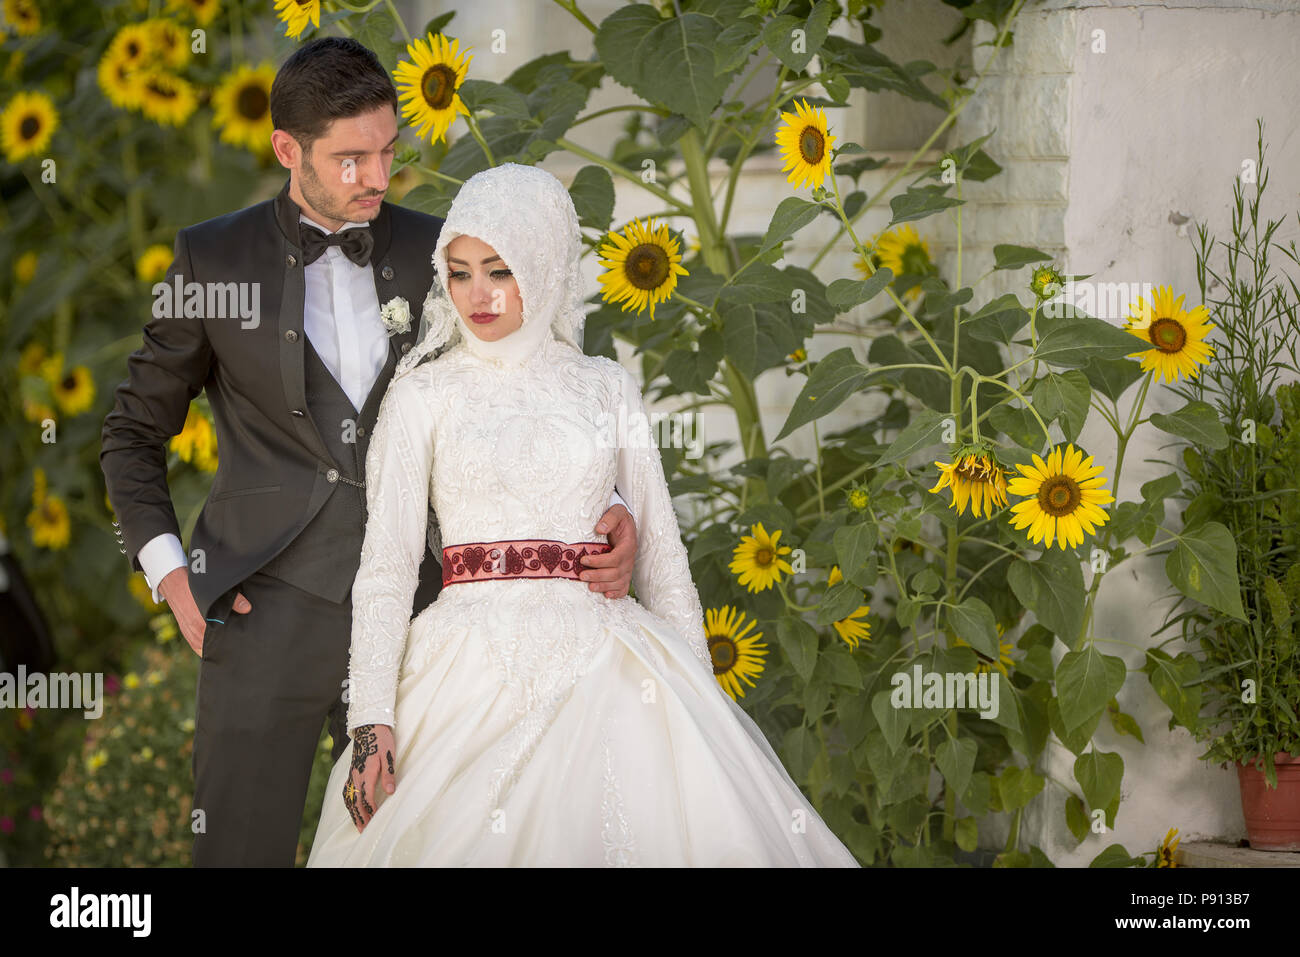 Sposa musulmana con la sciarpa tradizionale matrimonio islamico musulmano  immagini e fotografie stock ad alta risoluzione - Alamy